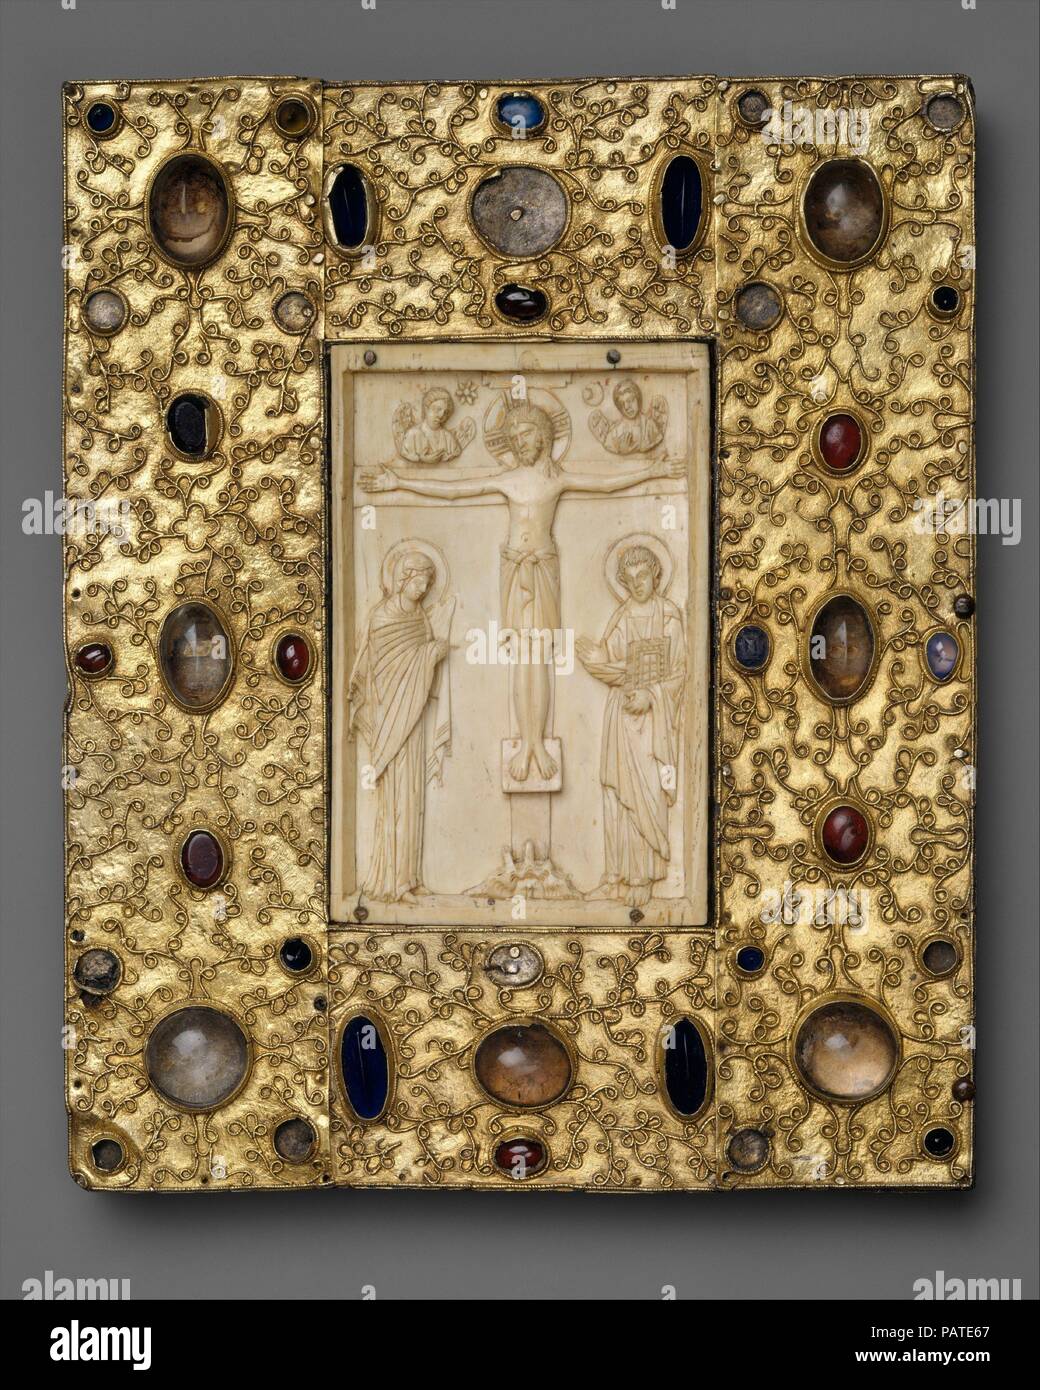 Couverture du livre avec l'icône byzantine de la Crucifixion. Culture : Byzantine (ivoire) ; espagnol (paramétrage). Dimensions : hors tout : 10 3/8 x 8 5/8 x 1 in. (26,4 x 21,9 x 2,5 cm). Date : 1000 (ivoire) ; avant 1085 (paramétrage). Ivoires byzantins ont été hautement appréciés en Europe de l'ouest, où ils ont survécu dans les trésors de l'Eglise ou ont été incorporés dans les reliures de livres de luxe. L'ivoire provenant du panneau de gauche formé à l'origine le centre d'une icône byzantine lambrissé de trois. Il peut avoir été l'un des nombreux dons pour le couvent de Santa Cruz de la Serós, qui a été fondée par la Reine Felicia (d. 1085), épouse de Sancho V Banque D'Images